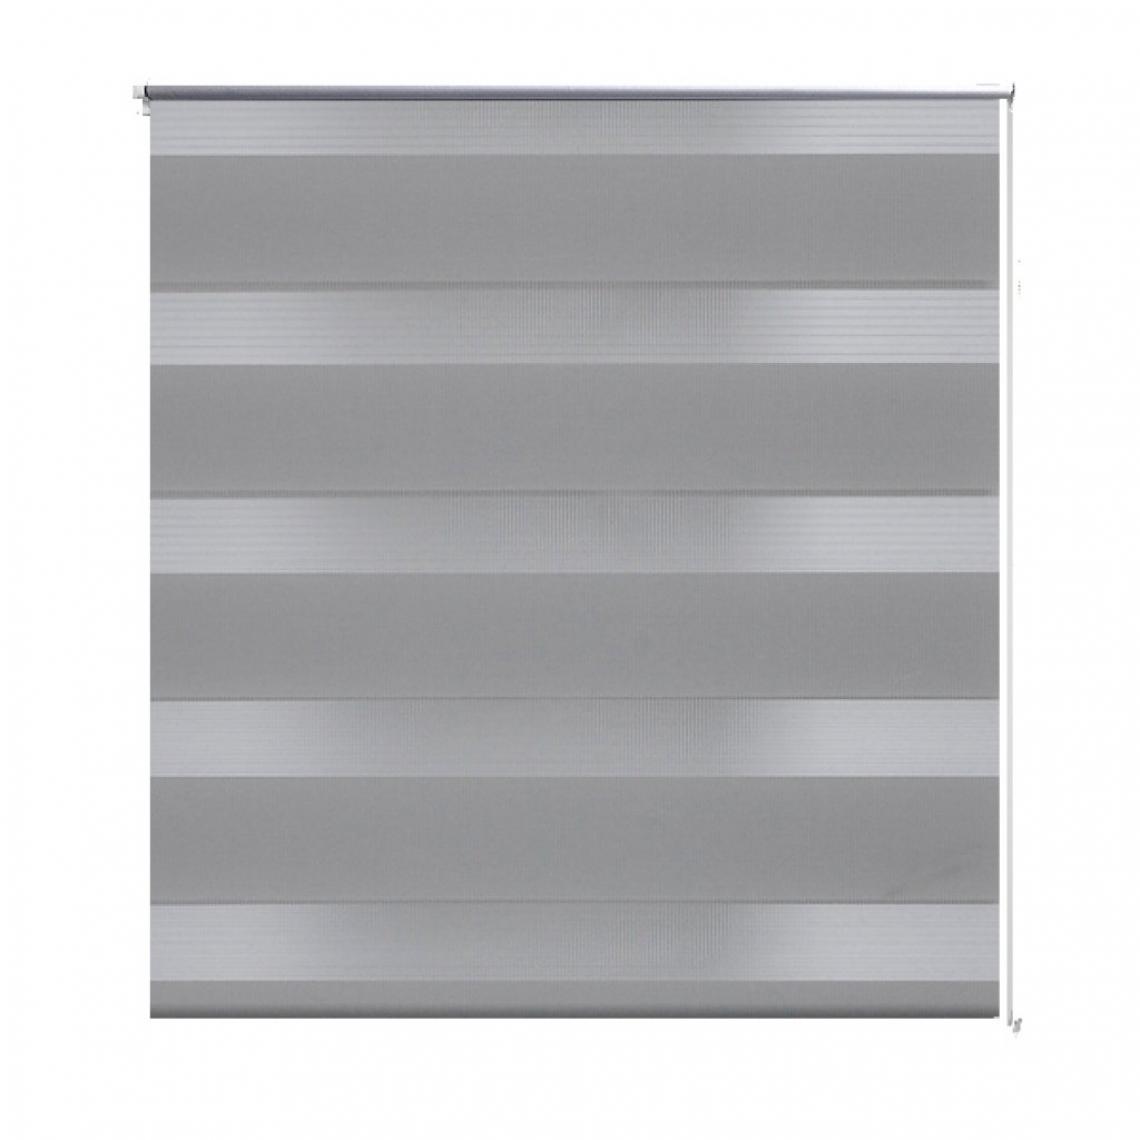 Helloshop26 - Store enrouleur gris tamisant 50 x 100 cm fenêtre rideau pare-vue volet roulant 4102081 - Store compatible Velux